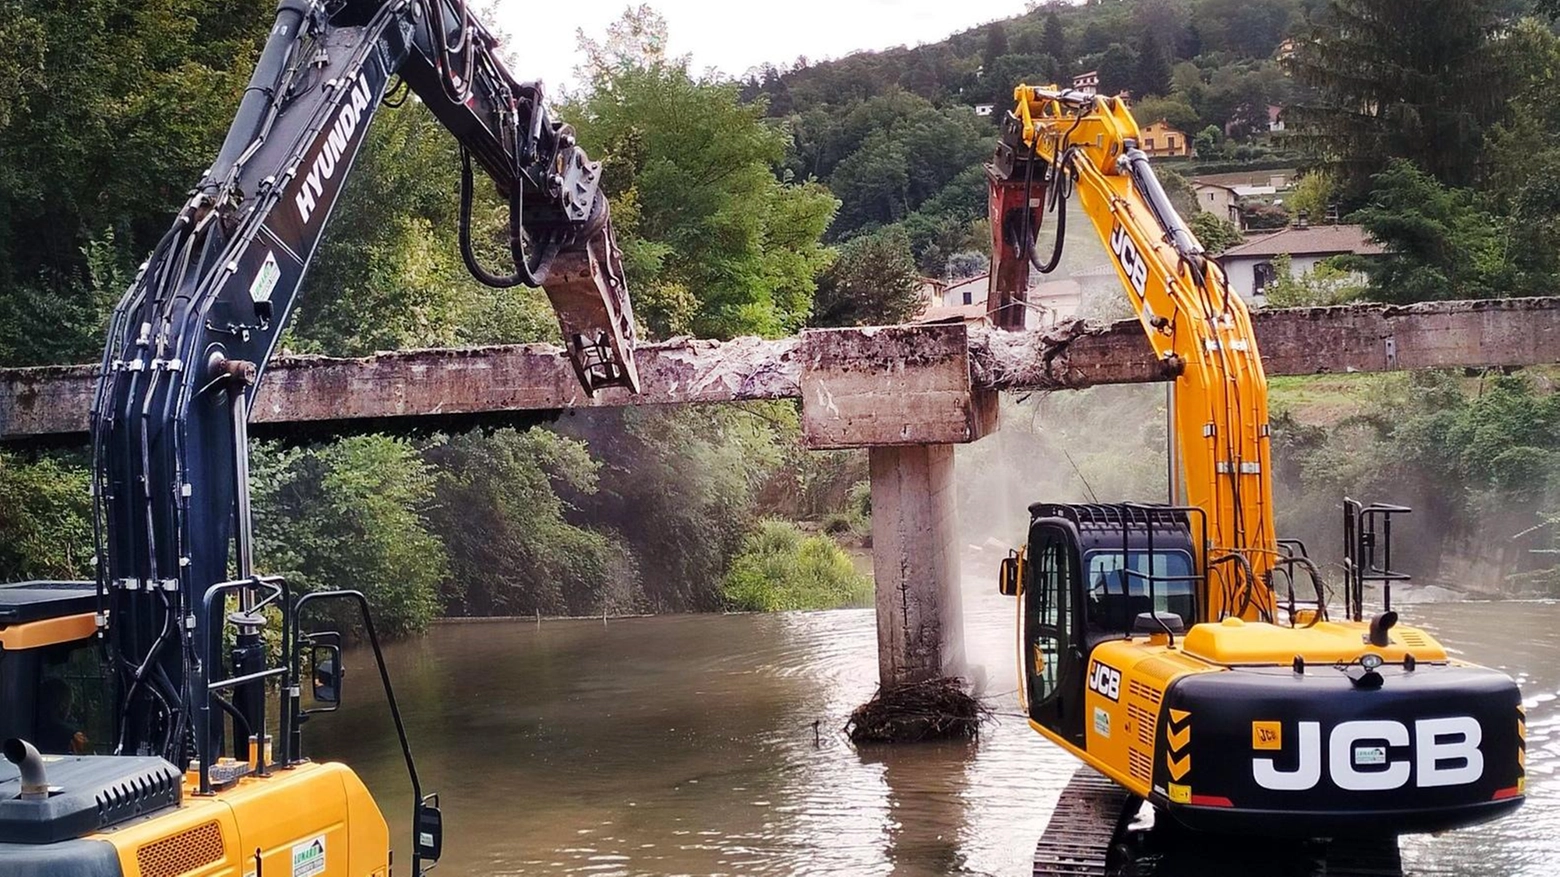 Demolito il vecchio ponte Cerri  Aperto il by-pass provvisorio  "Costruiremo il nuovo senza disagi"